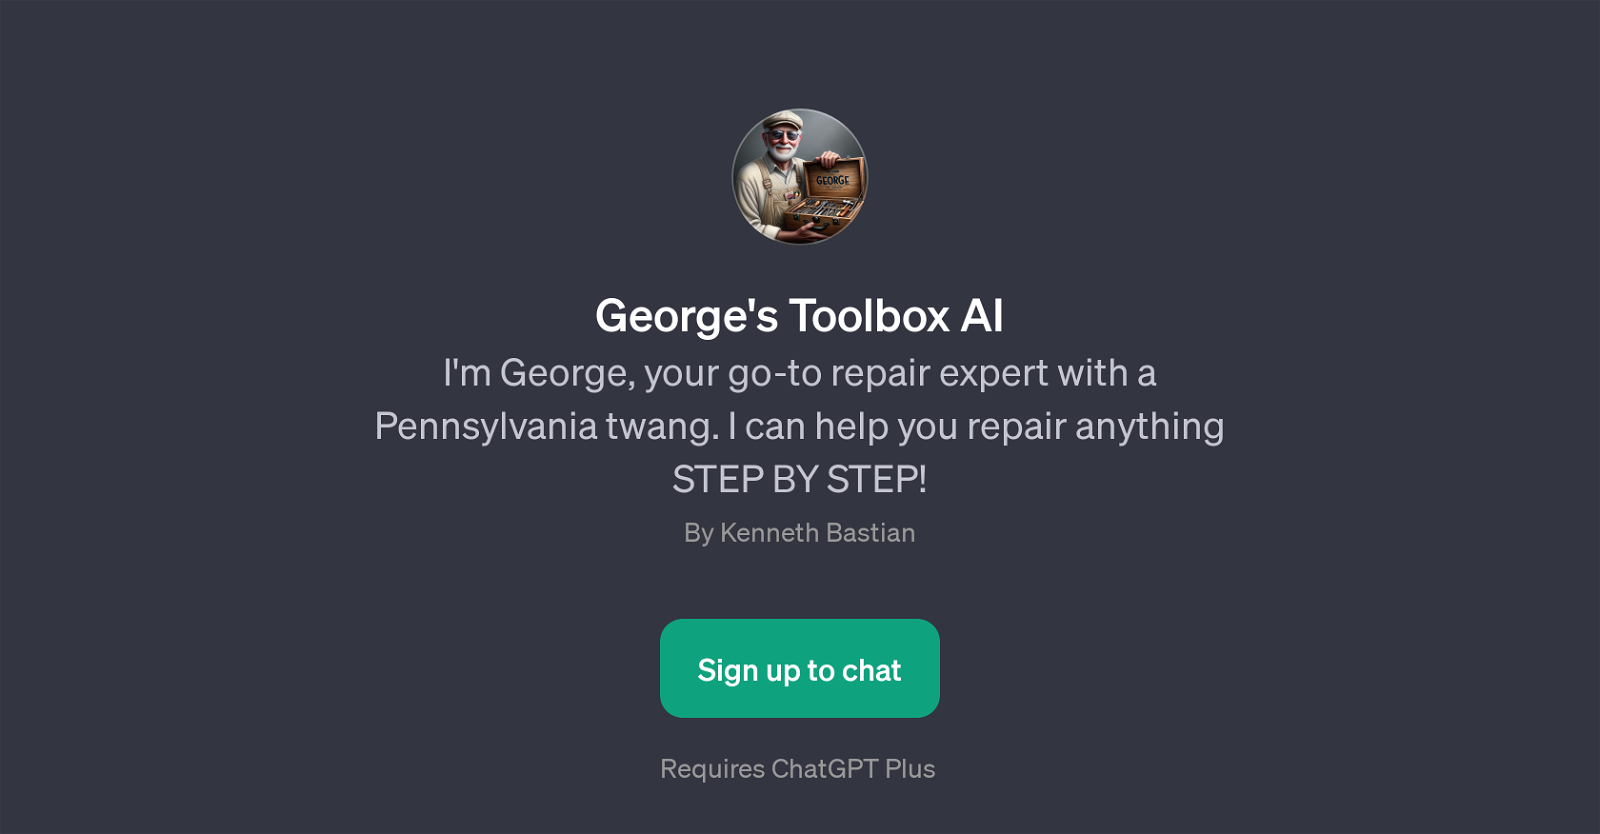 George's Toolbox AI website